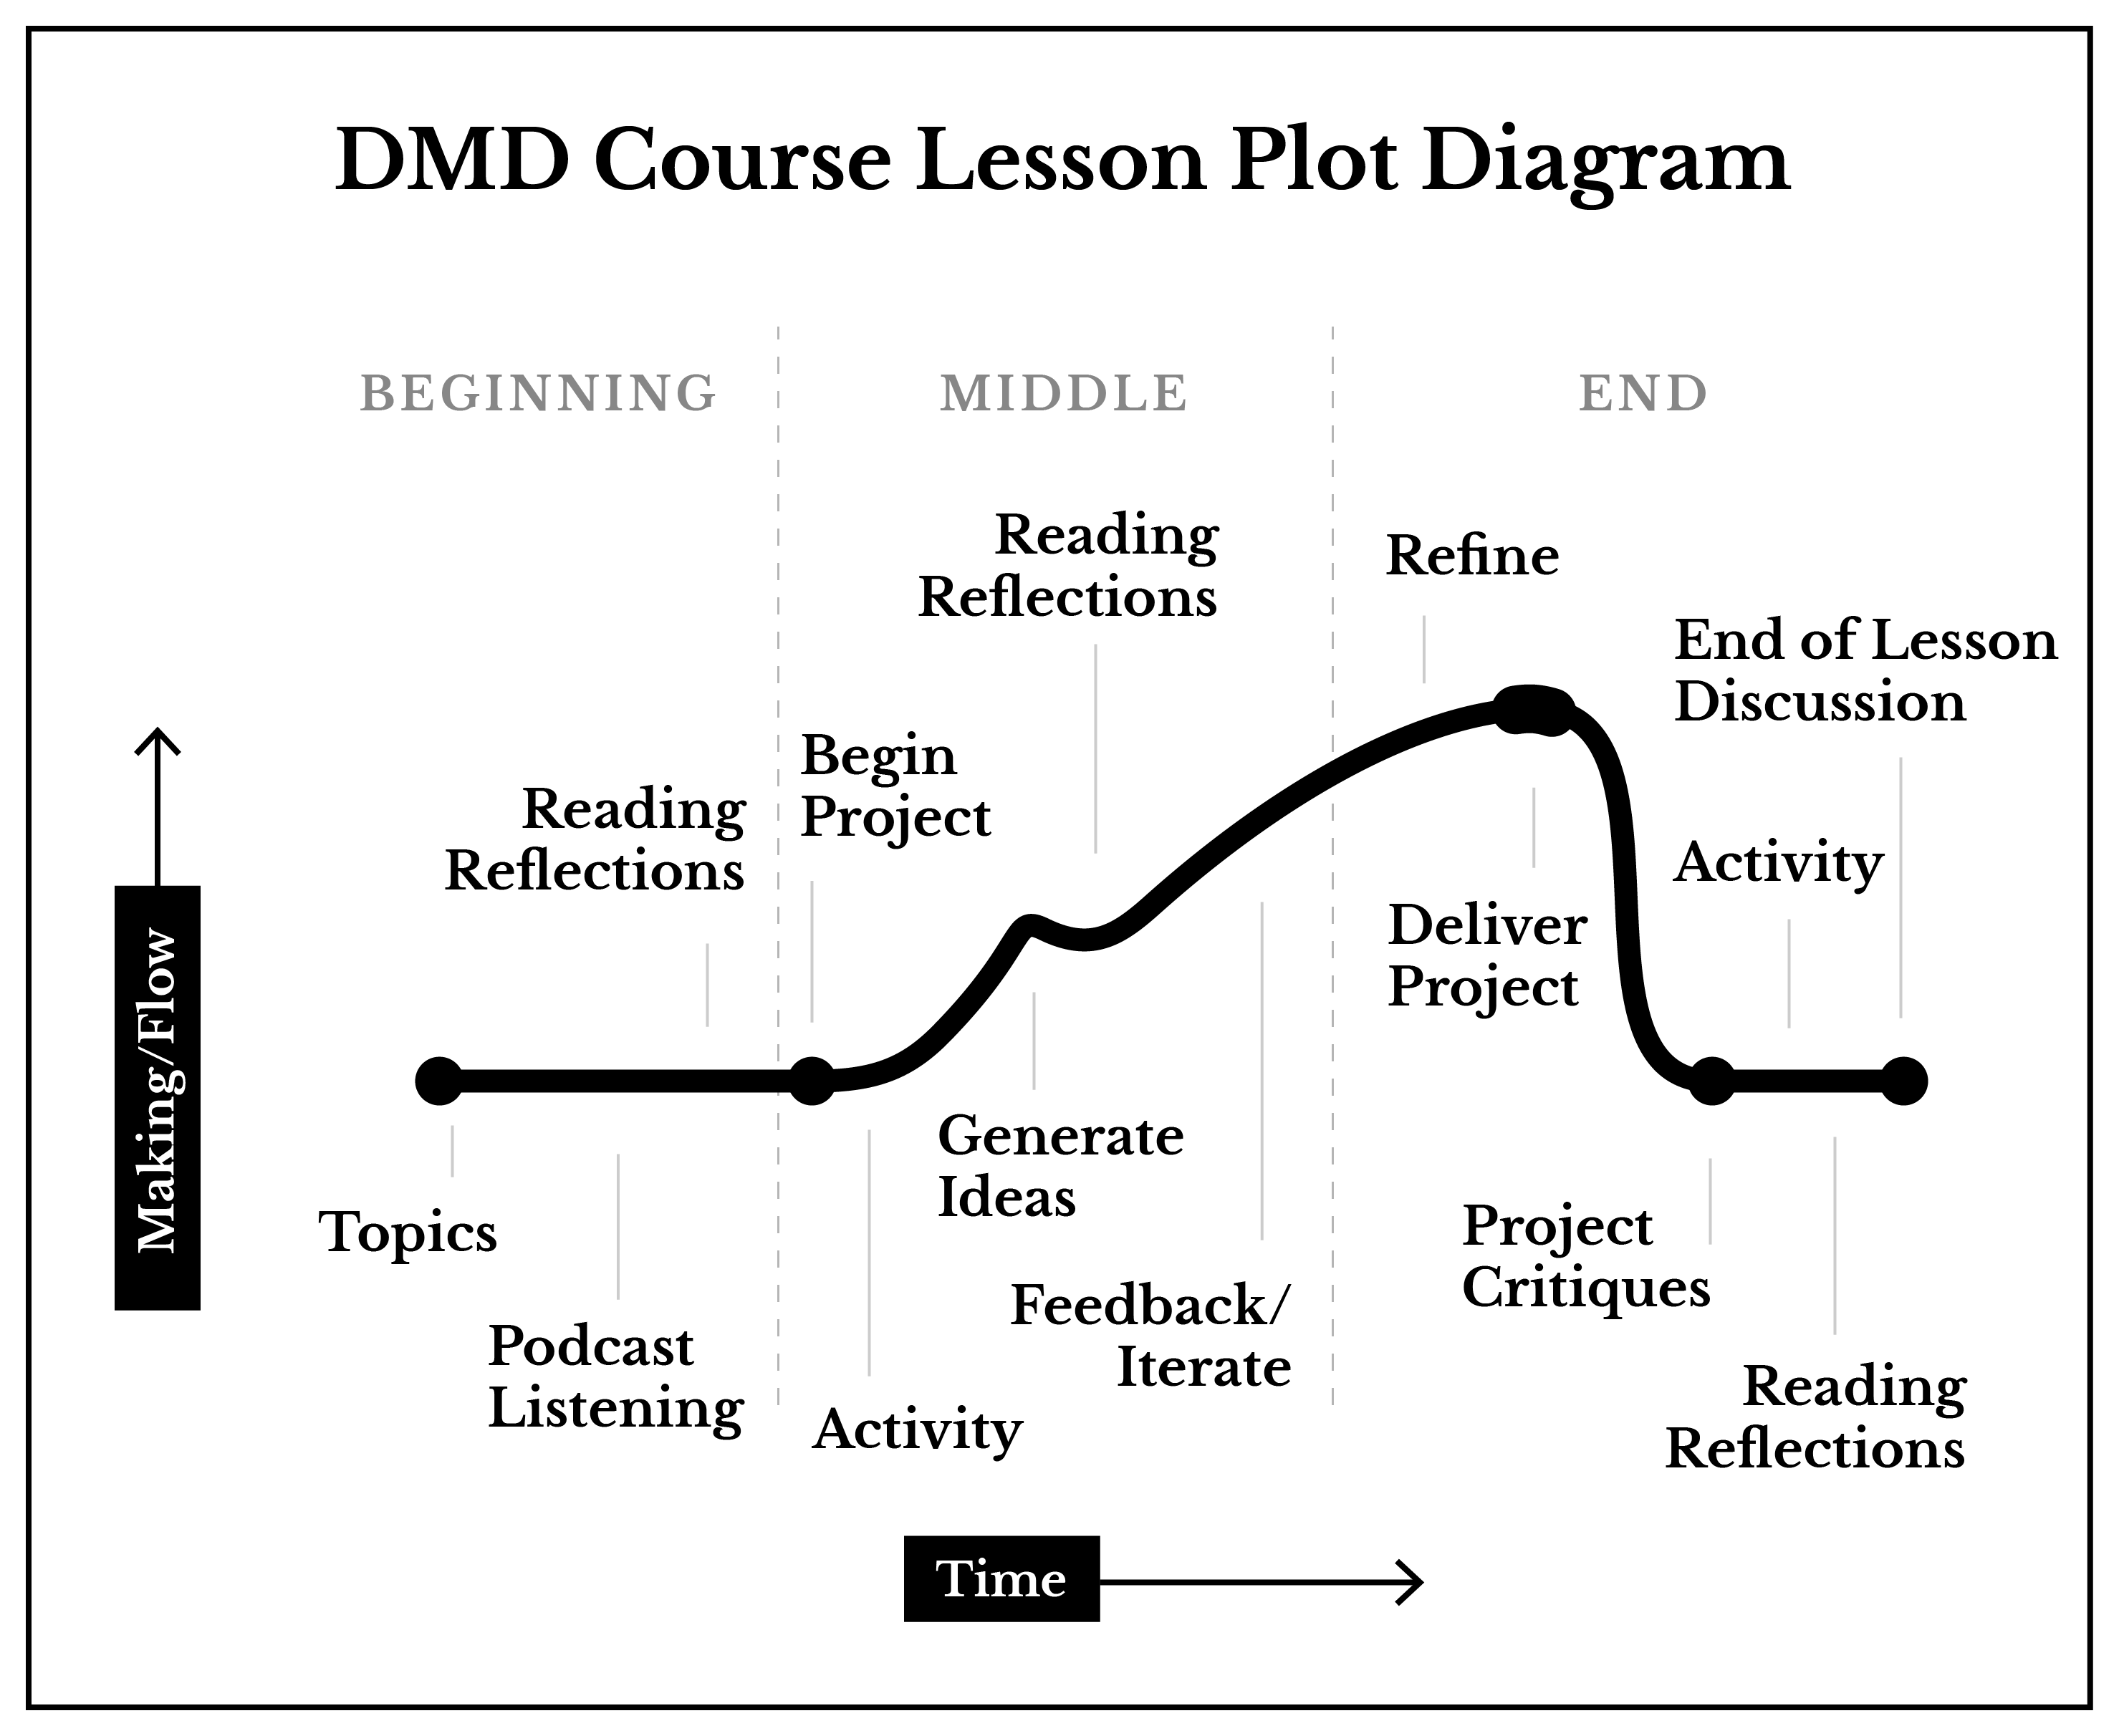 DMD Course Lesson Plot Diagram